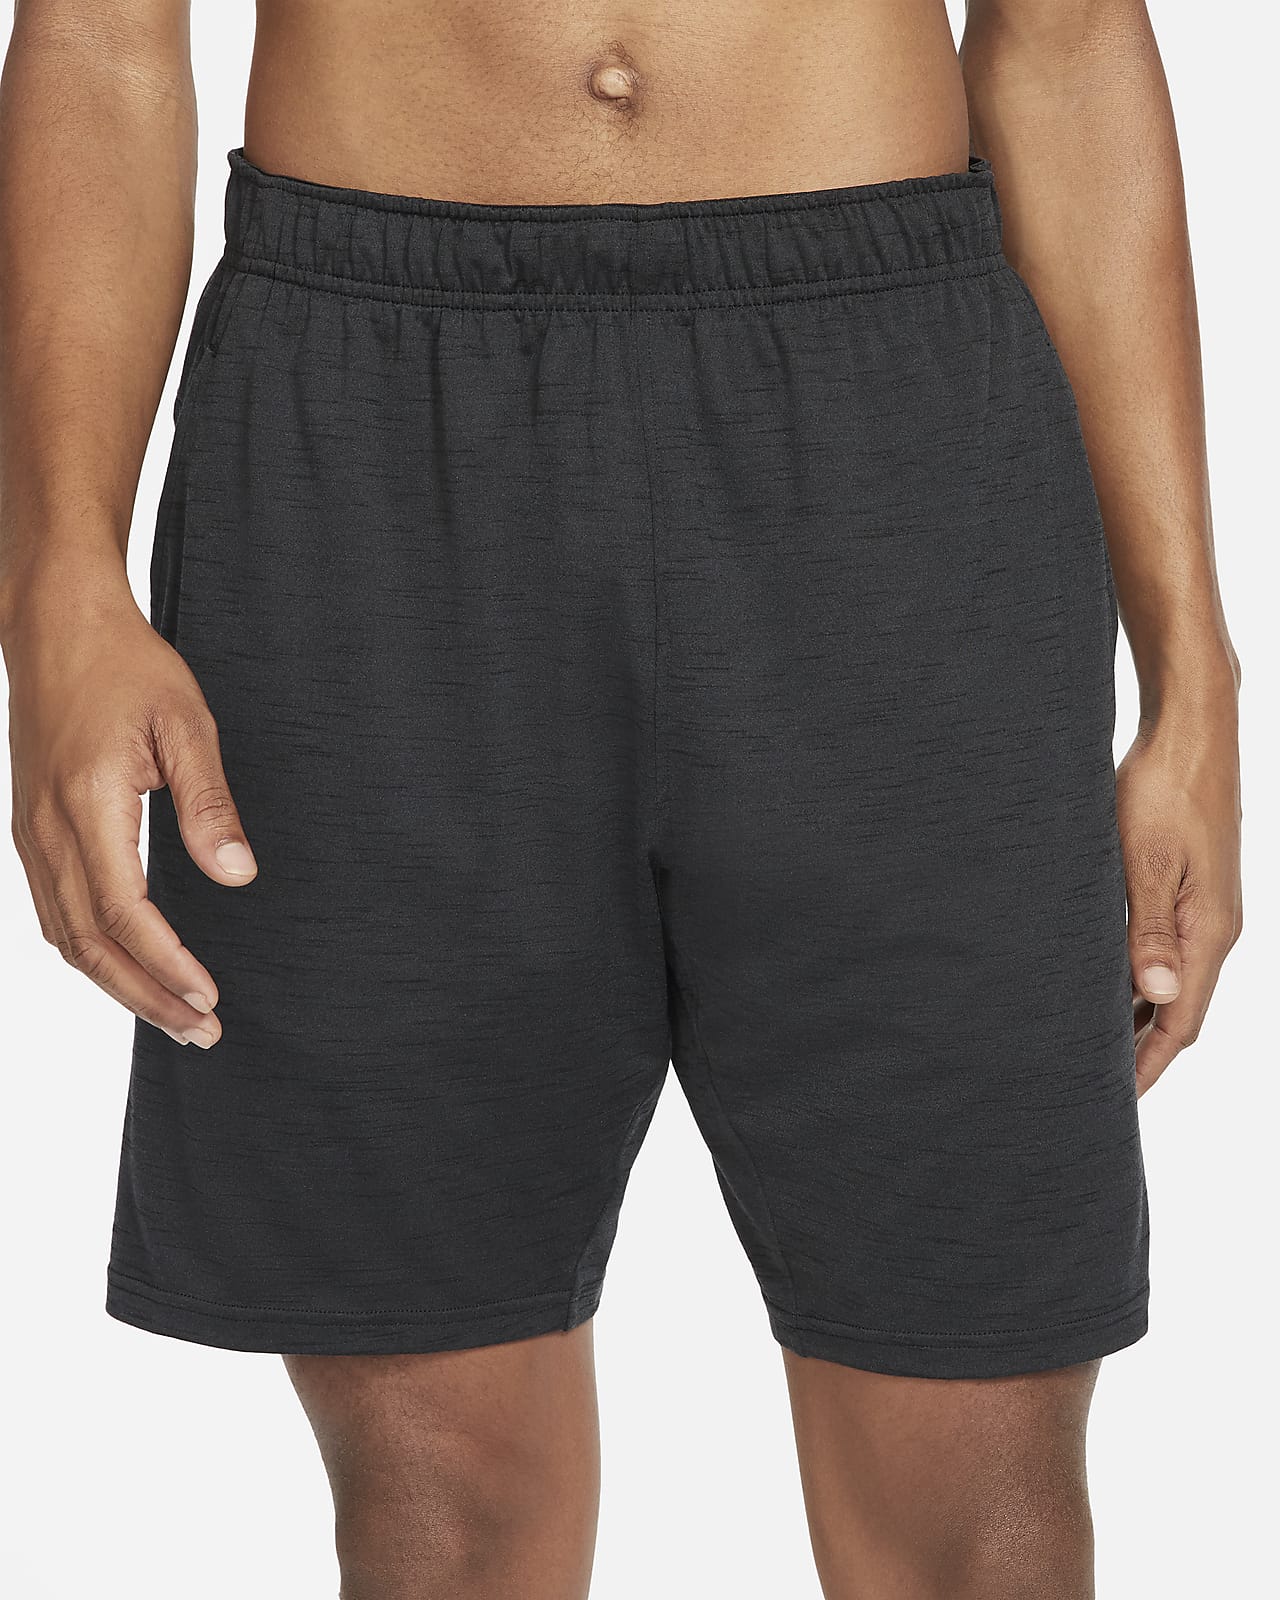 Nike Yoga Men's Shorts. Nike.com